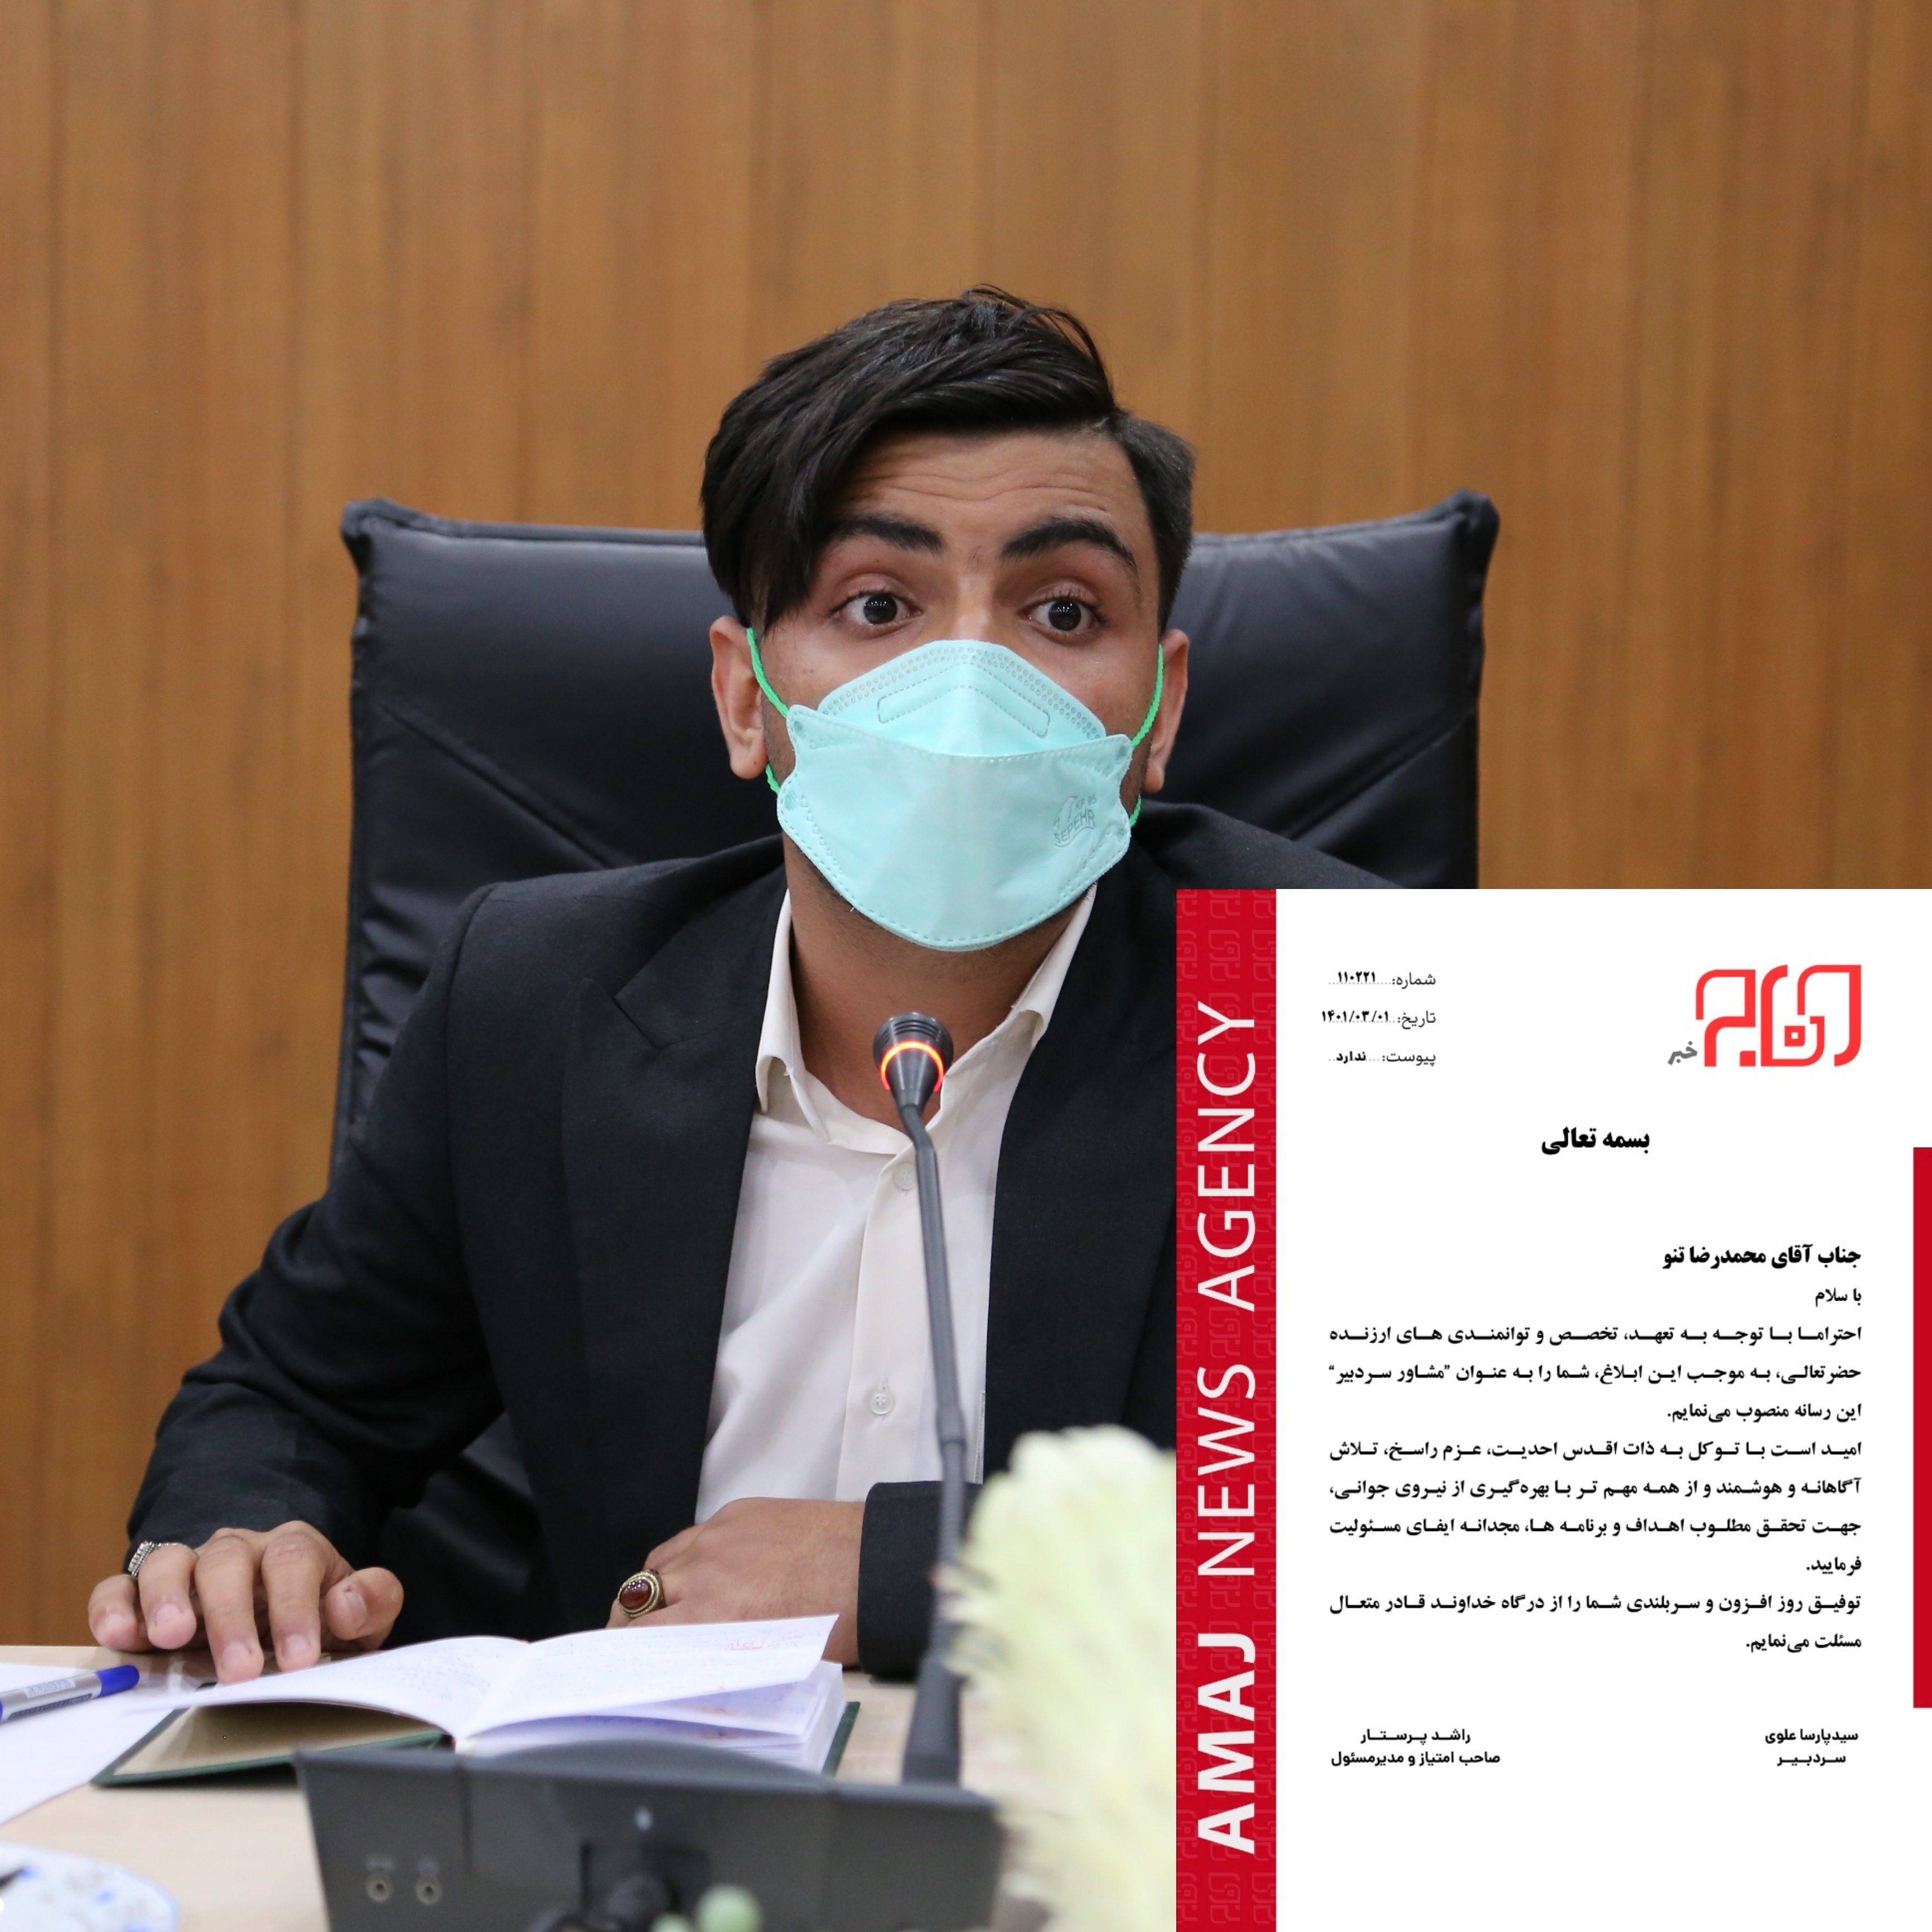 یک بوشهری بعنوان مشاور عالی سردبیر پایگاه خبری آماج خبر منصوب شد